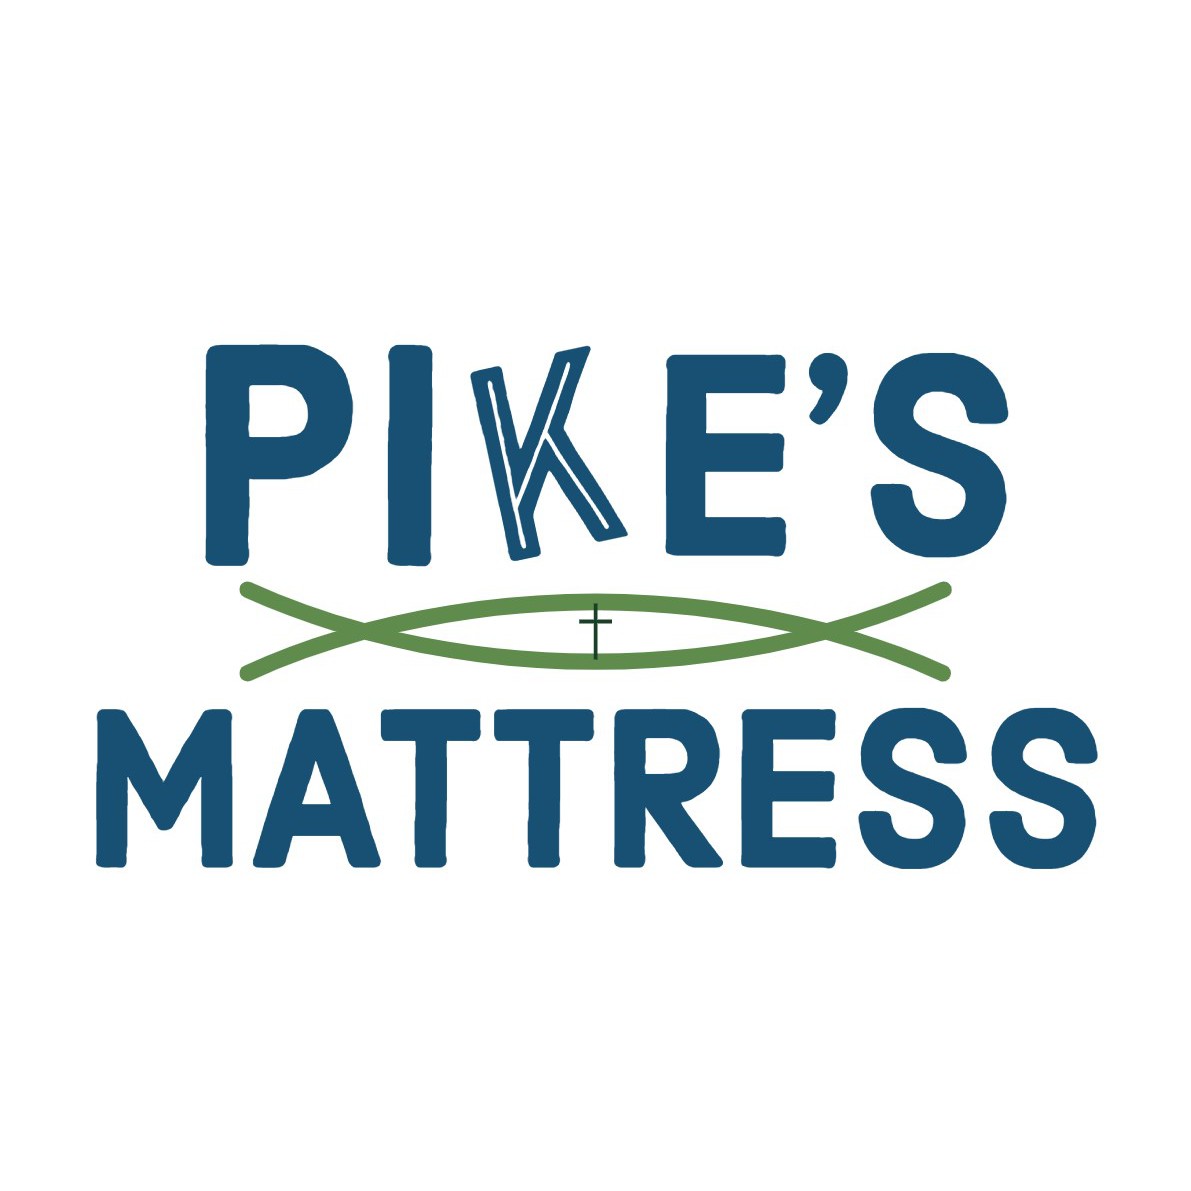 Pike's Mattress